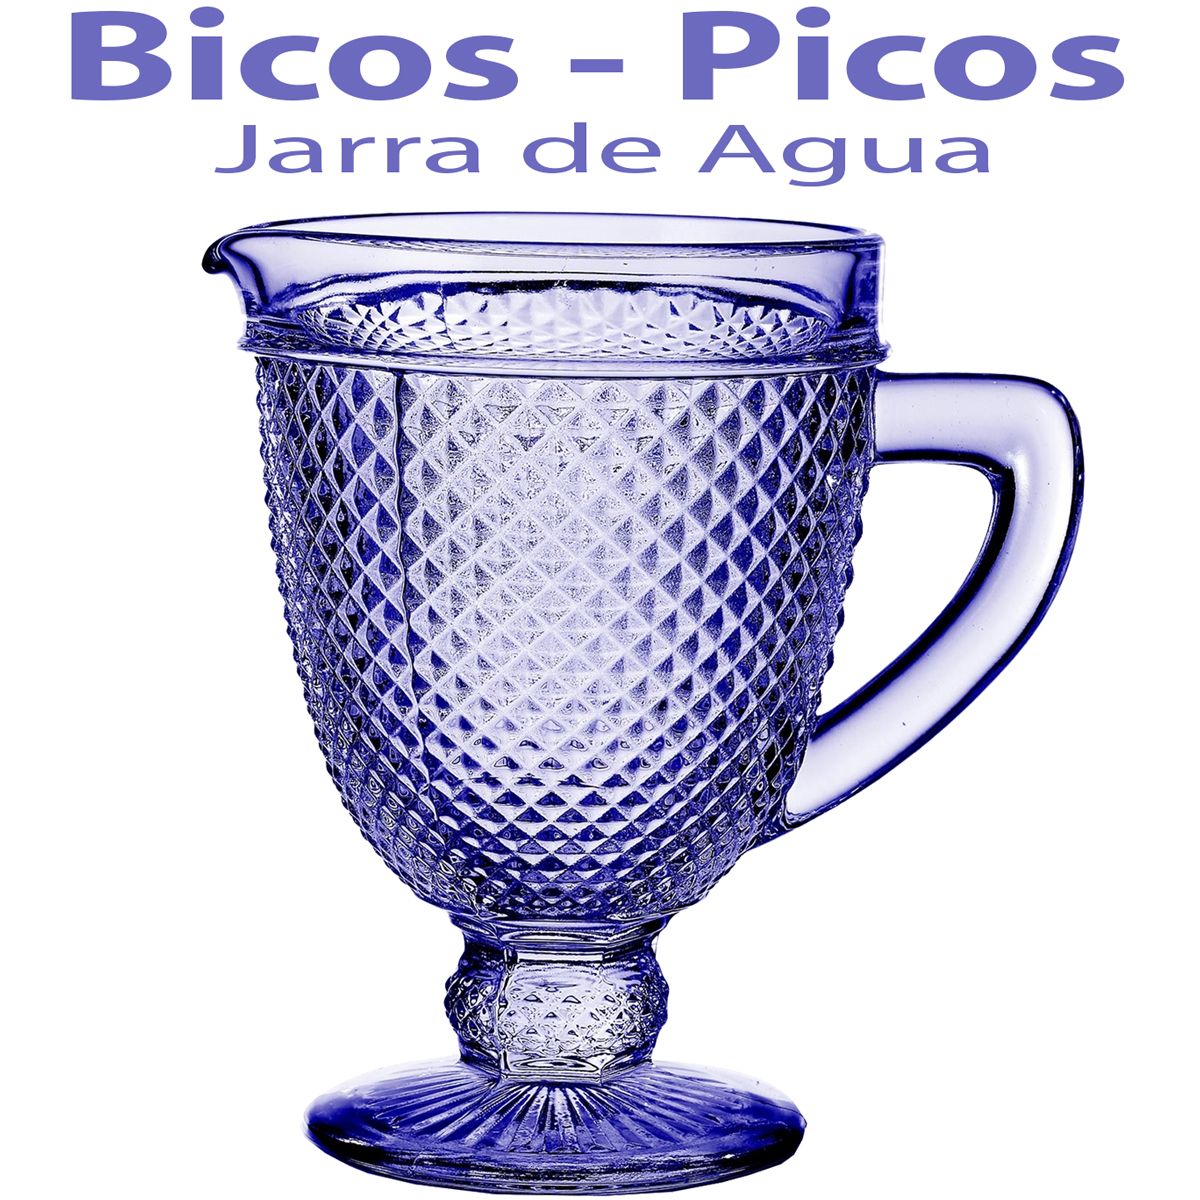 Jarra de Agua Cristal Bicos - Picos Azul Lavanda Vista Alegre Atlantis